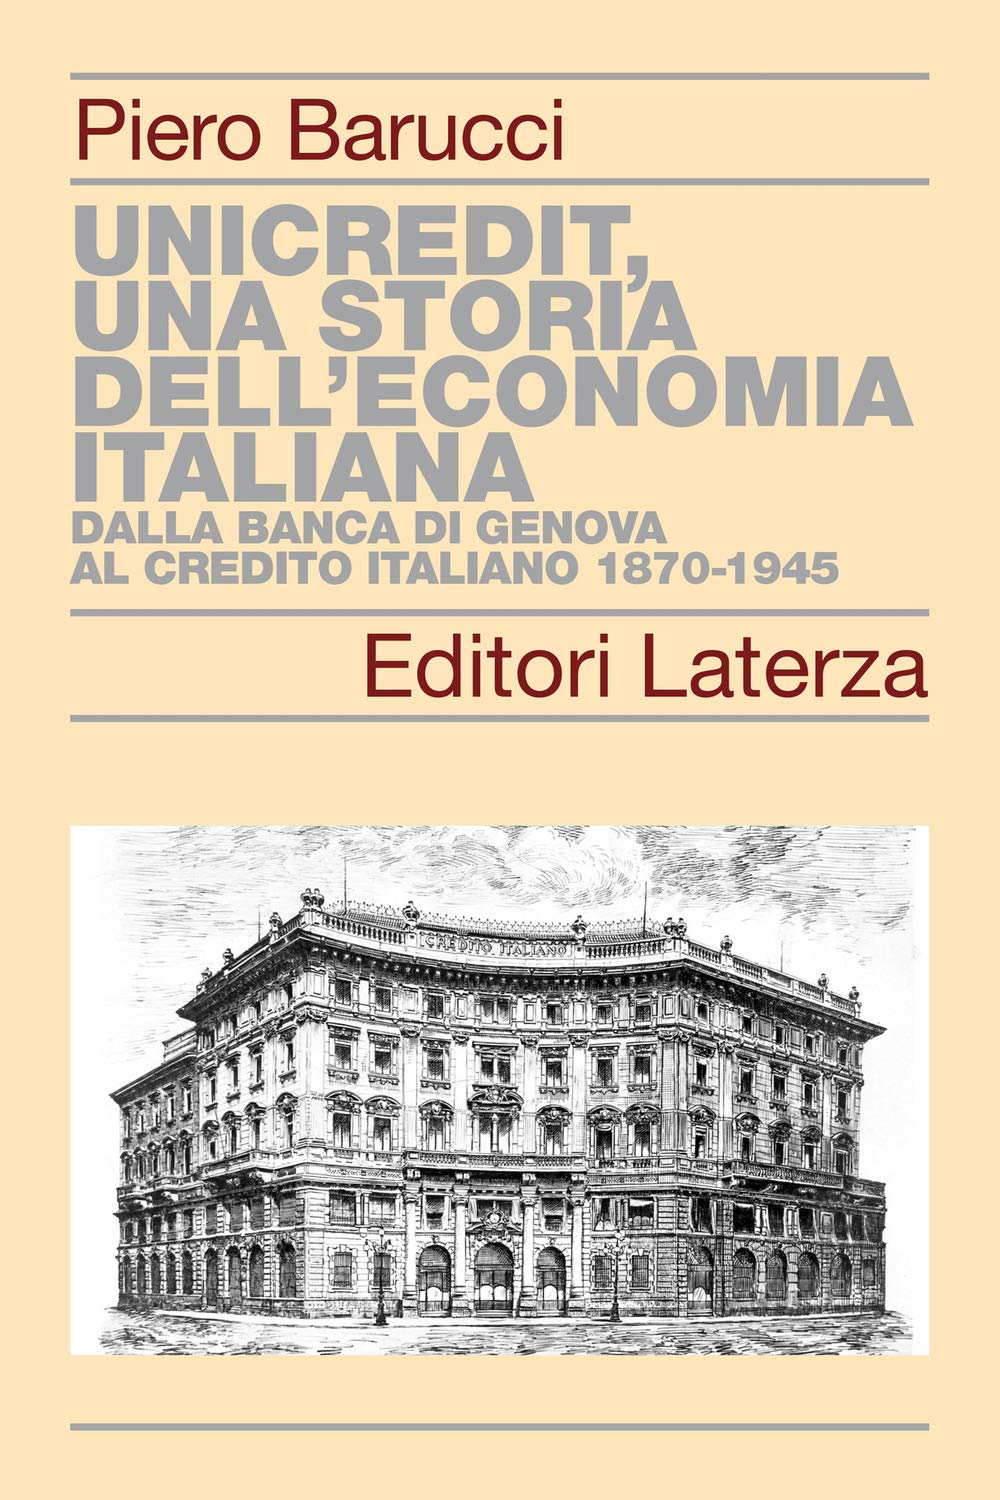 UniCredit, una storia dell'economia italiana. 9788858143575